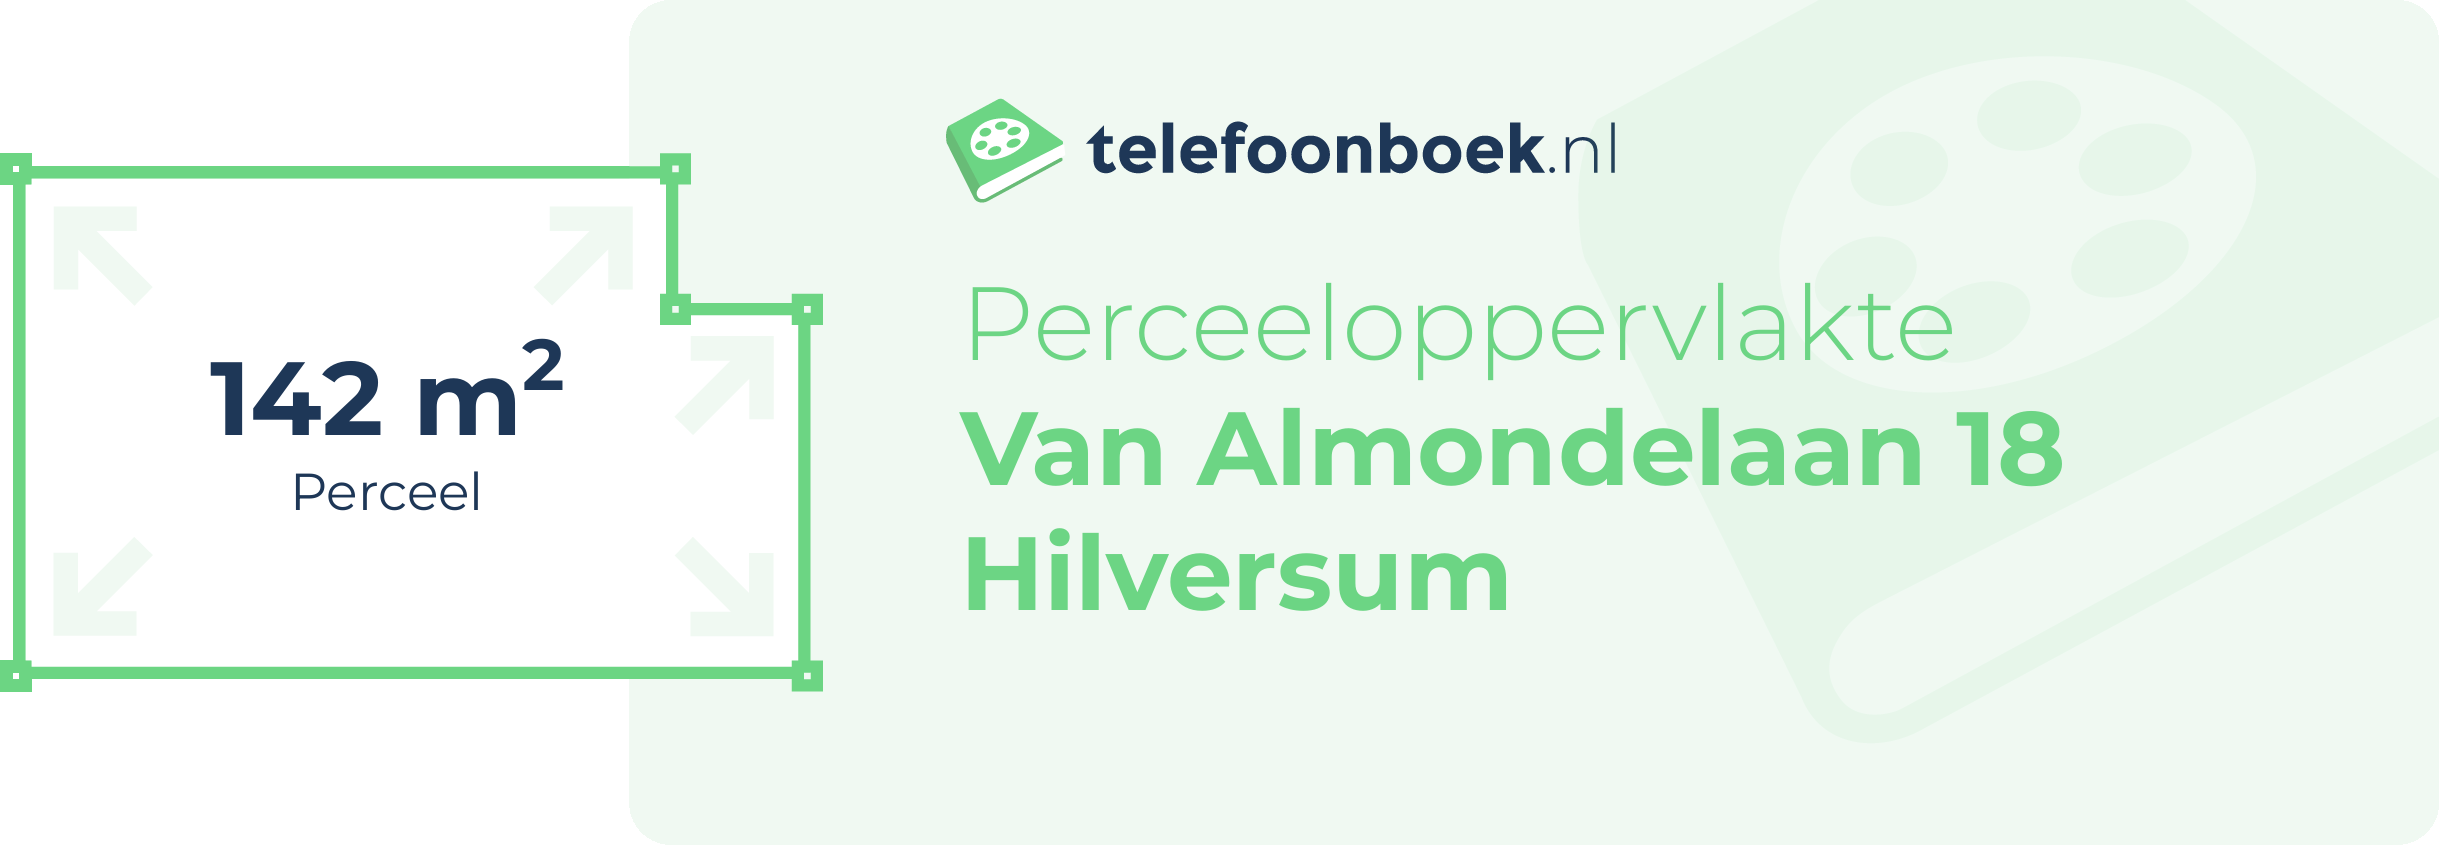 Perceeloppervlakte Van Almondelaan 18 Hilversum